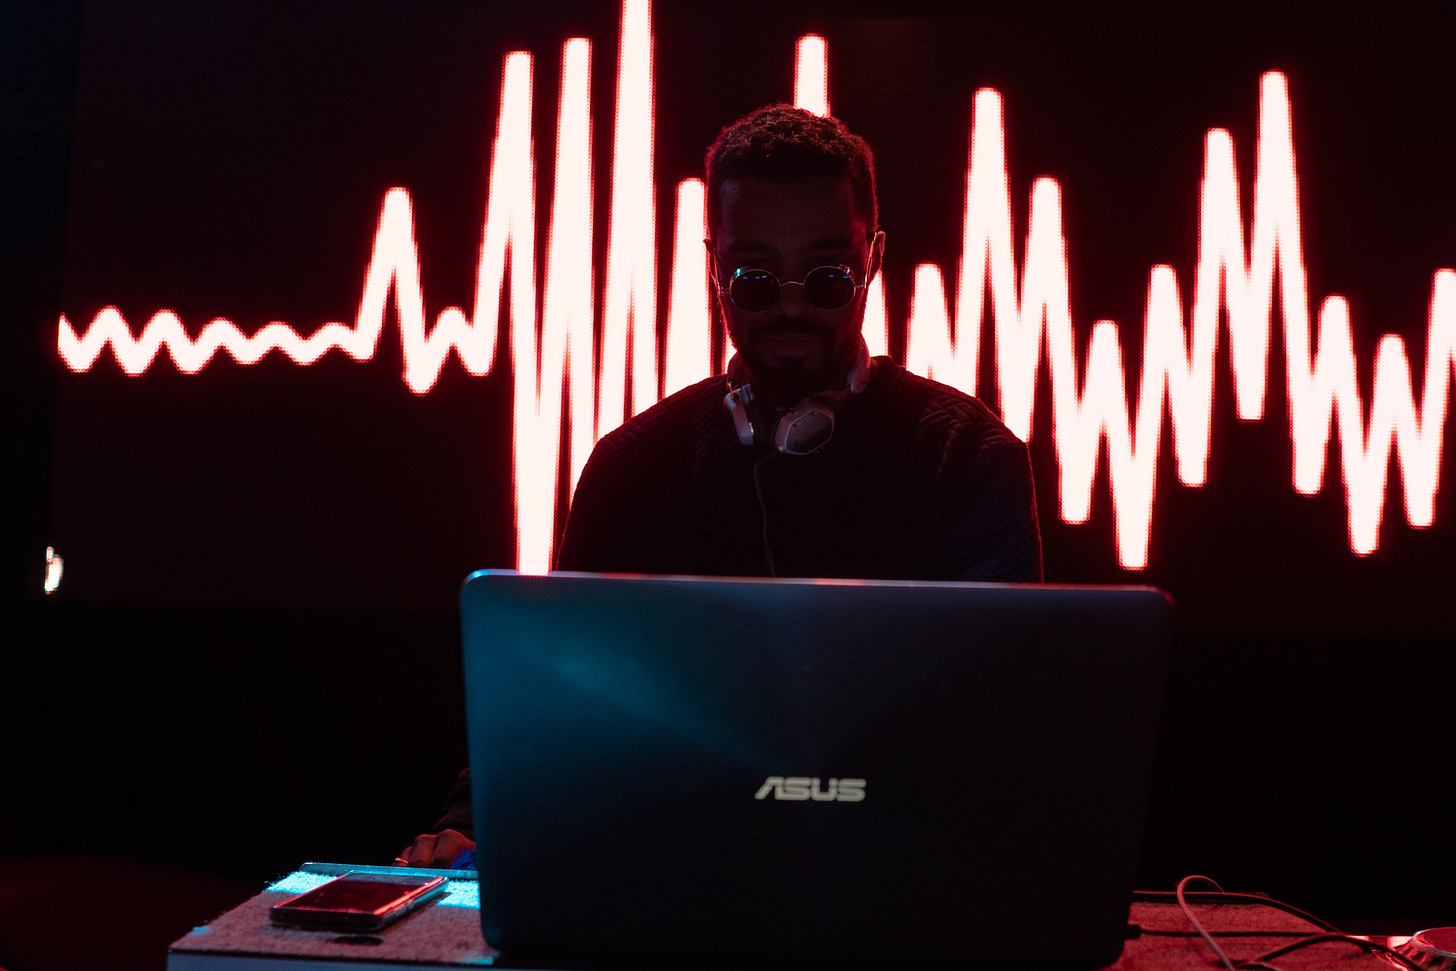 man sits at computer before pulse data